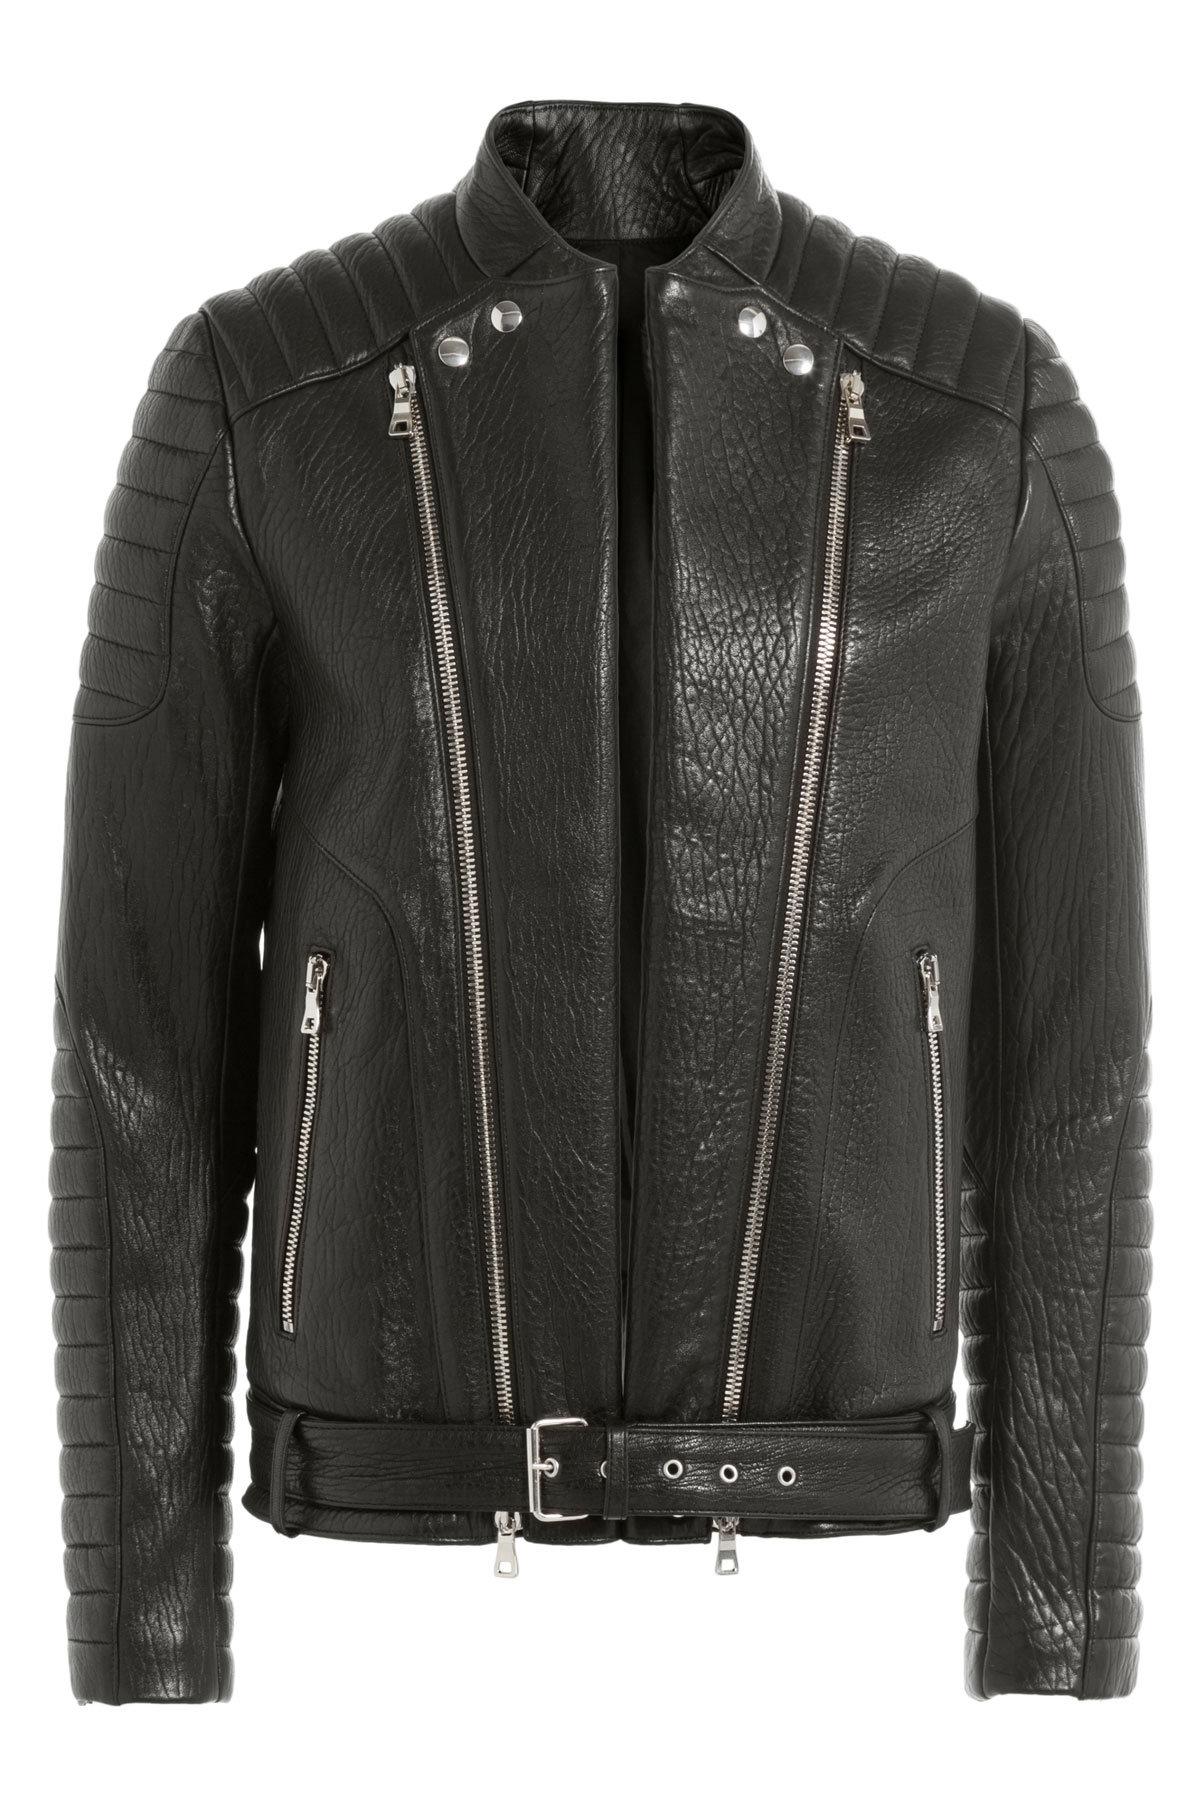 Lyst - Balmain Shearling Biker Jacket in Black for Men